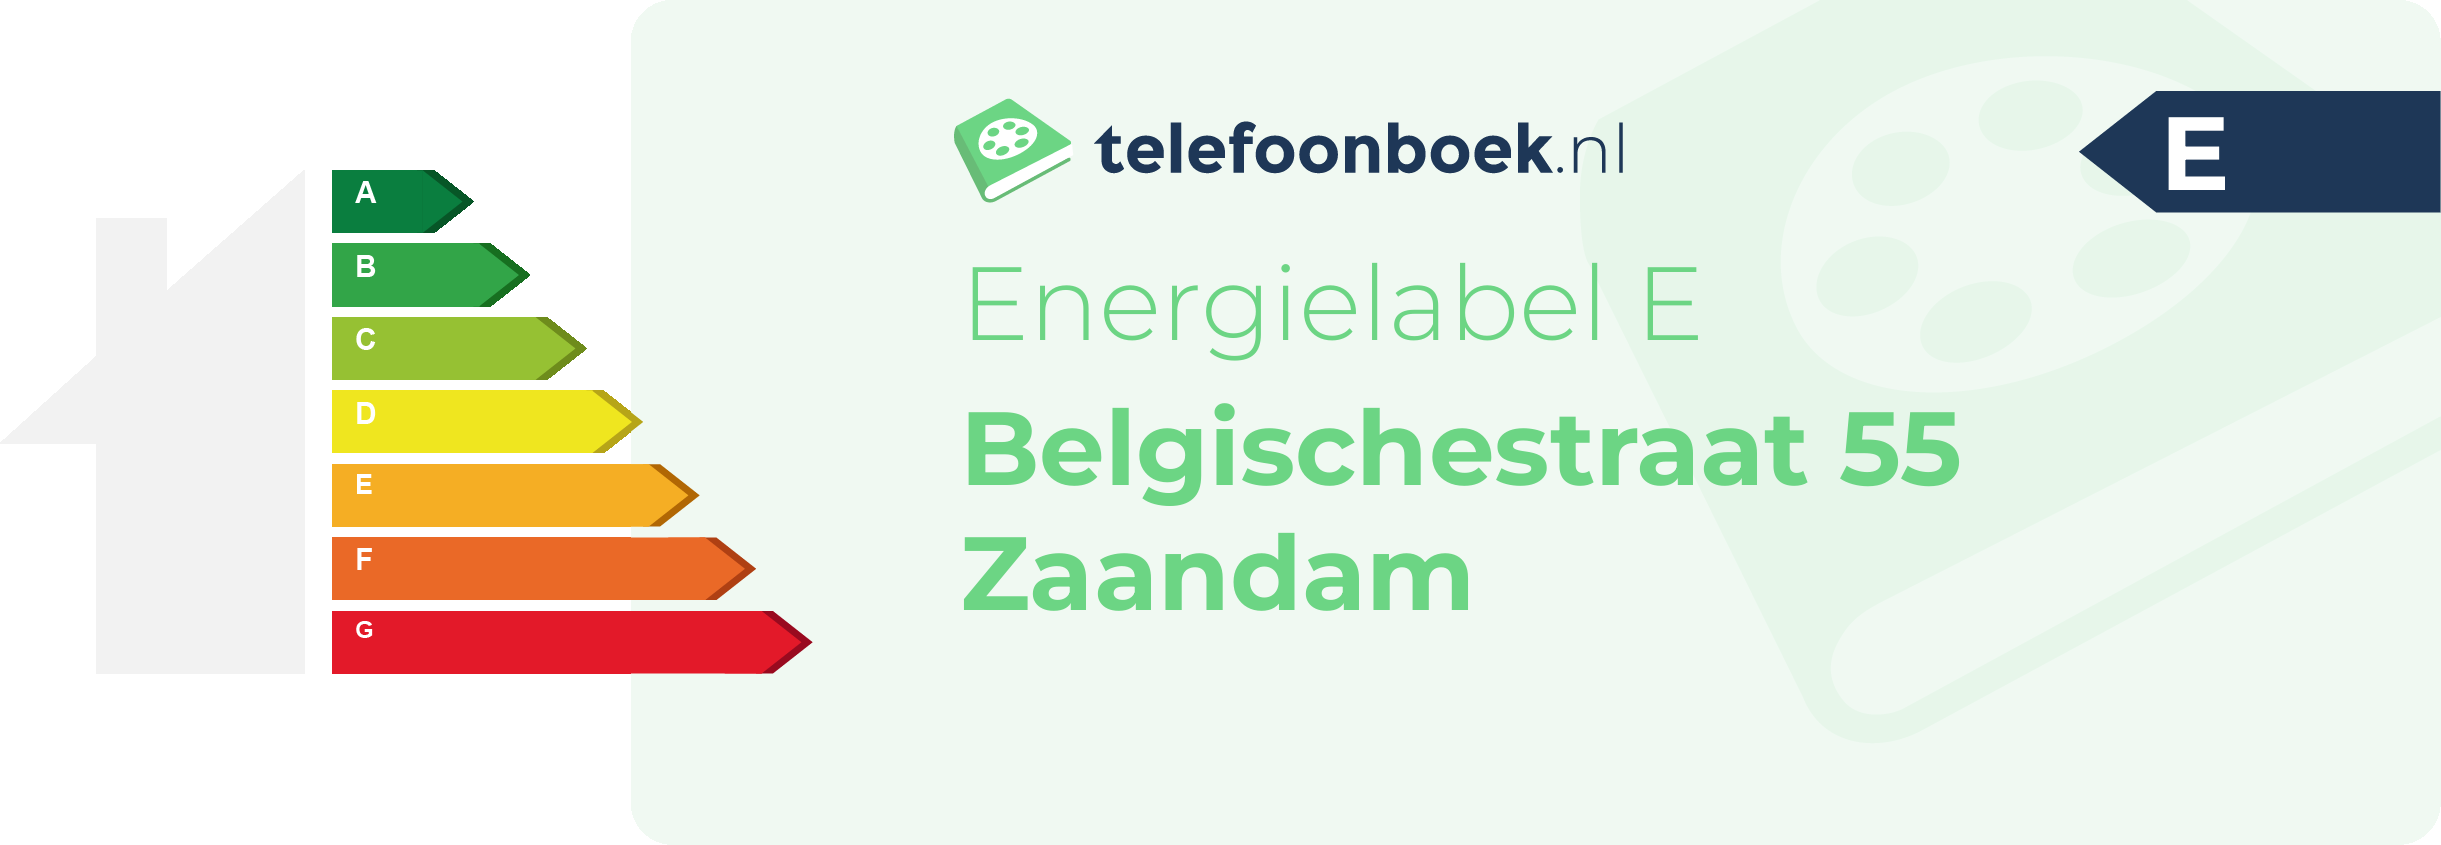 Energielabel Belgischestraat 55 Zaandam